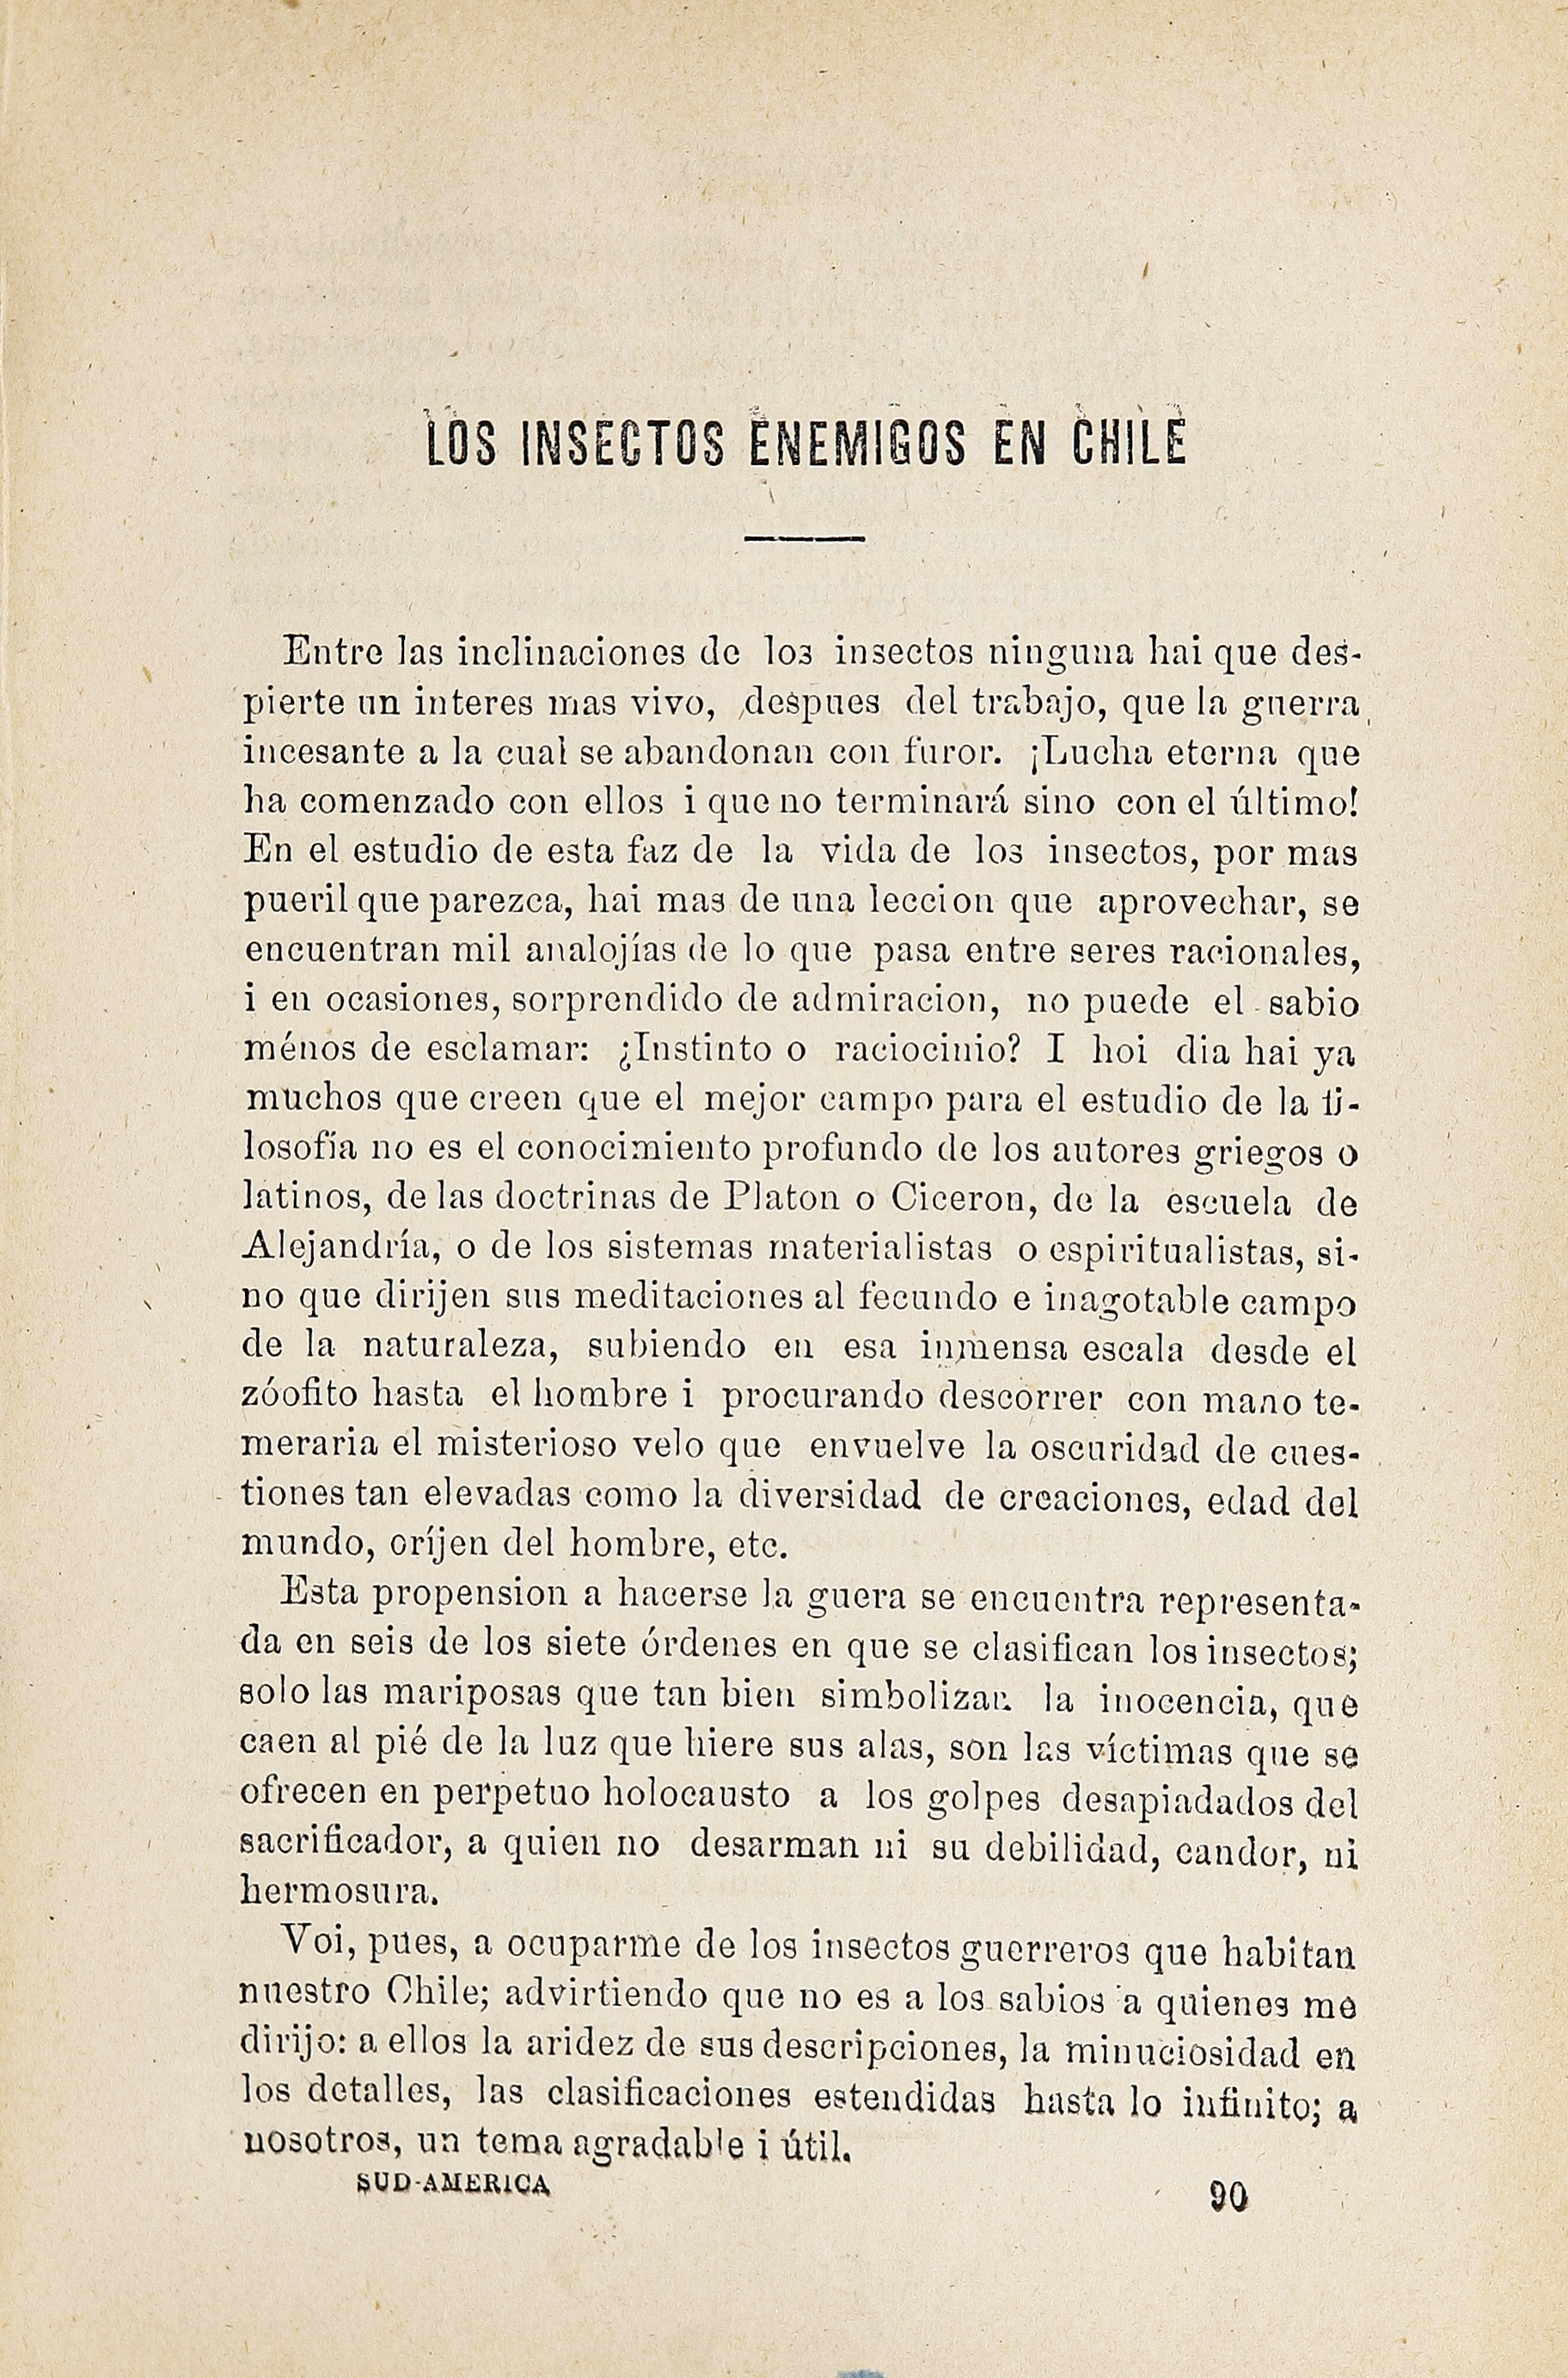 Sud-América. Tomo 2, 10 de marzo de 1874